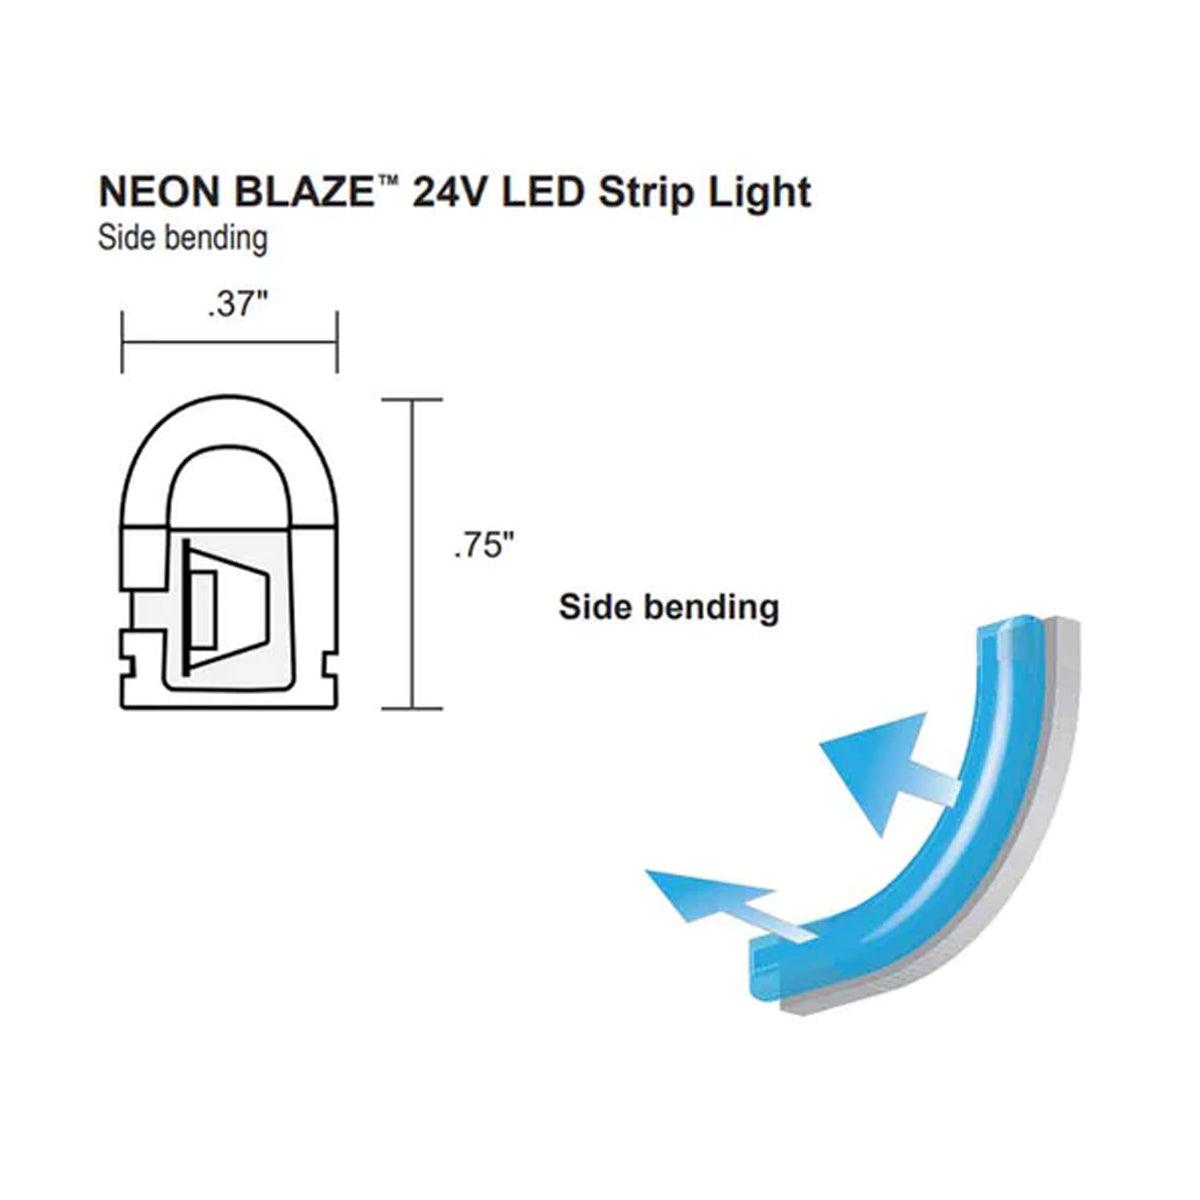 Neon BLAZE LED Neon Strip Light, Gold, 24V, Side Bending - Bees Lighting